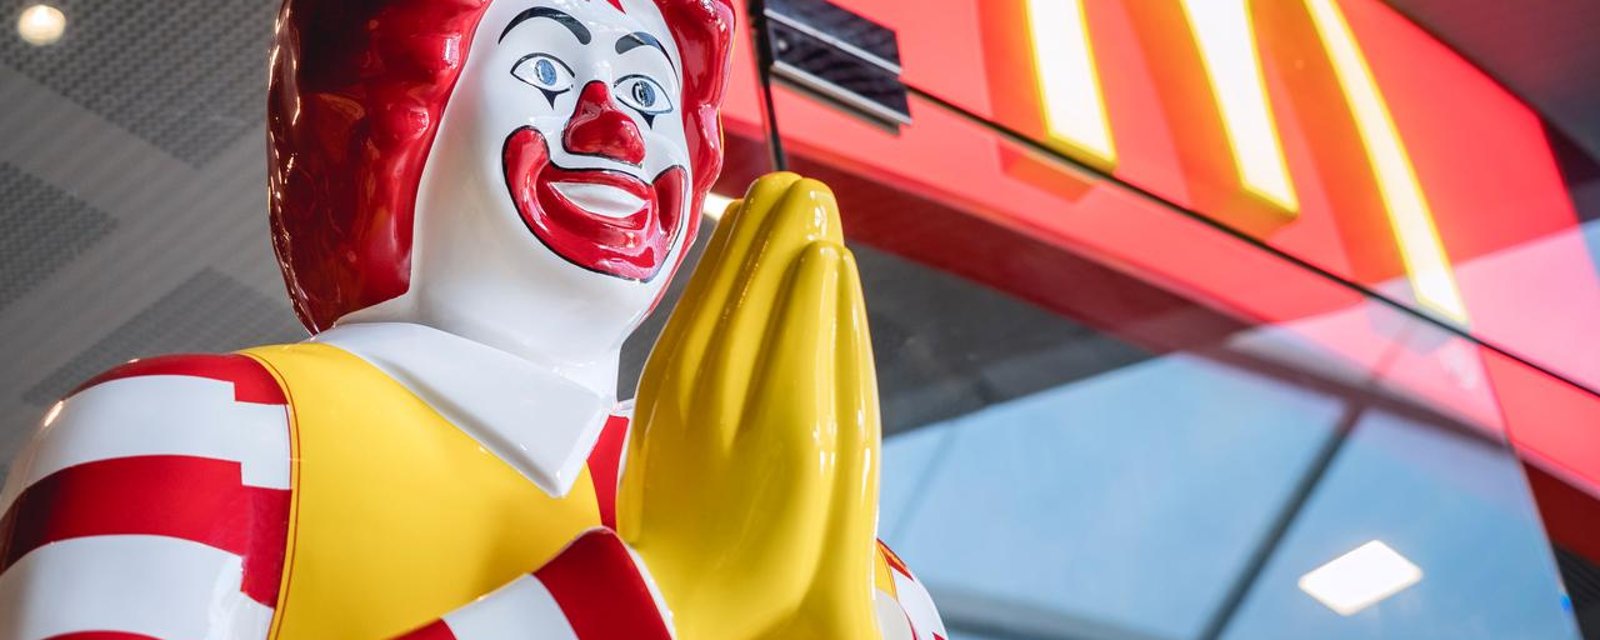 Ce McDonald's ridiculement cher frustre beaucoup des clients avec ses prix insensés